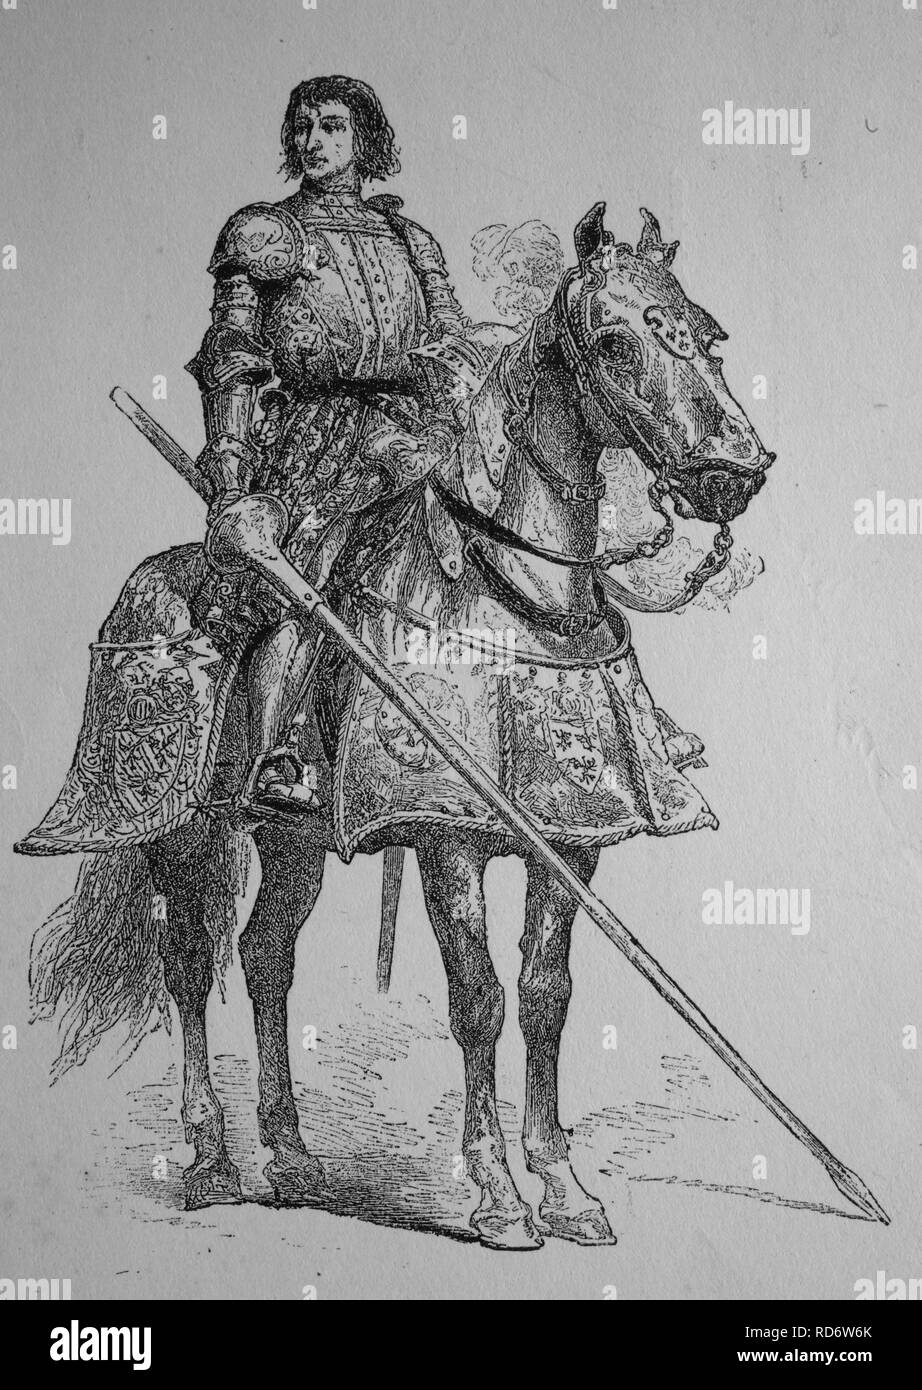 Pierre Terrail LeVieux, seigneur de Bayard, 1476 - 1524, connu comme le chevalier sans peur et sans reproche Banque D'Images